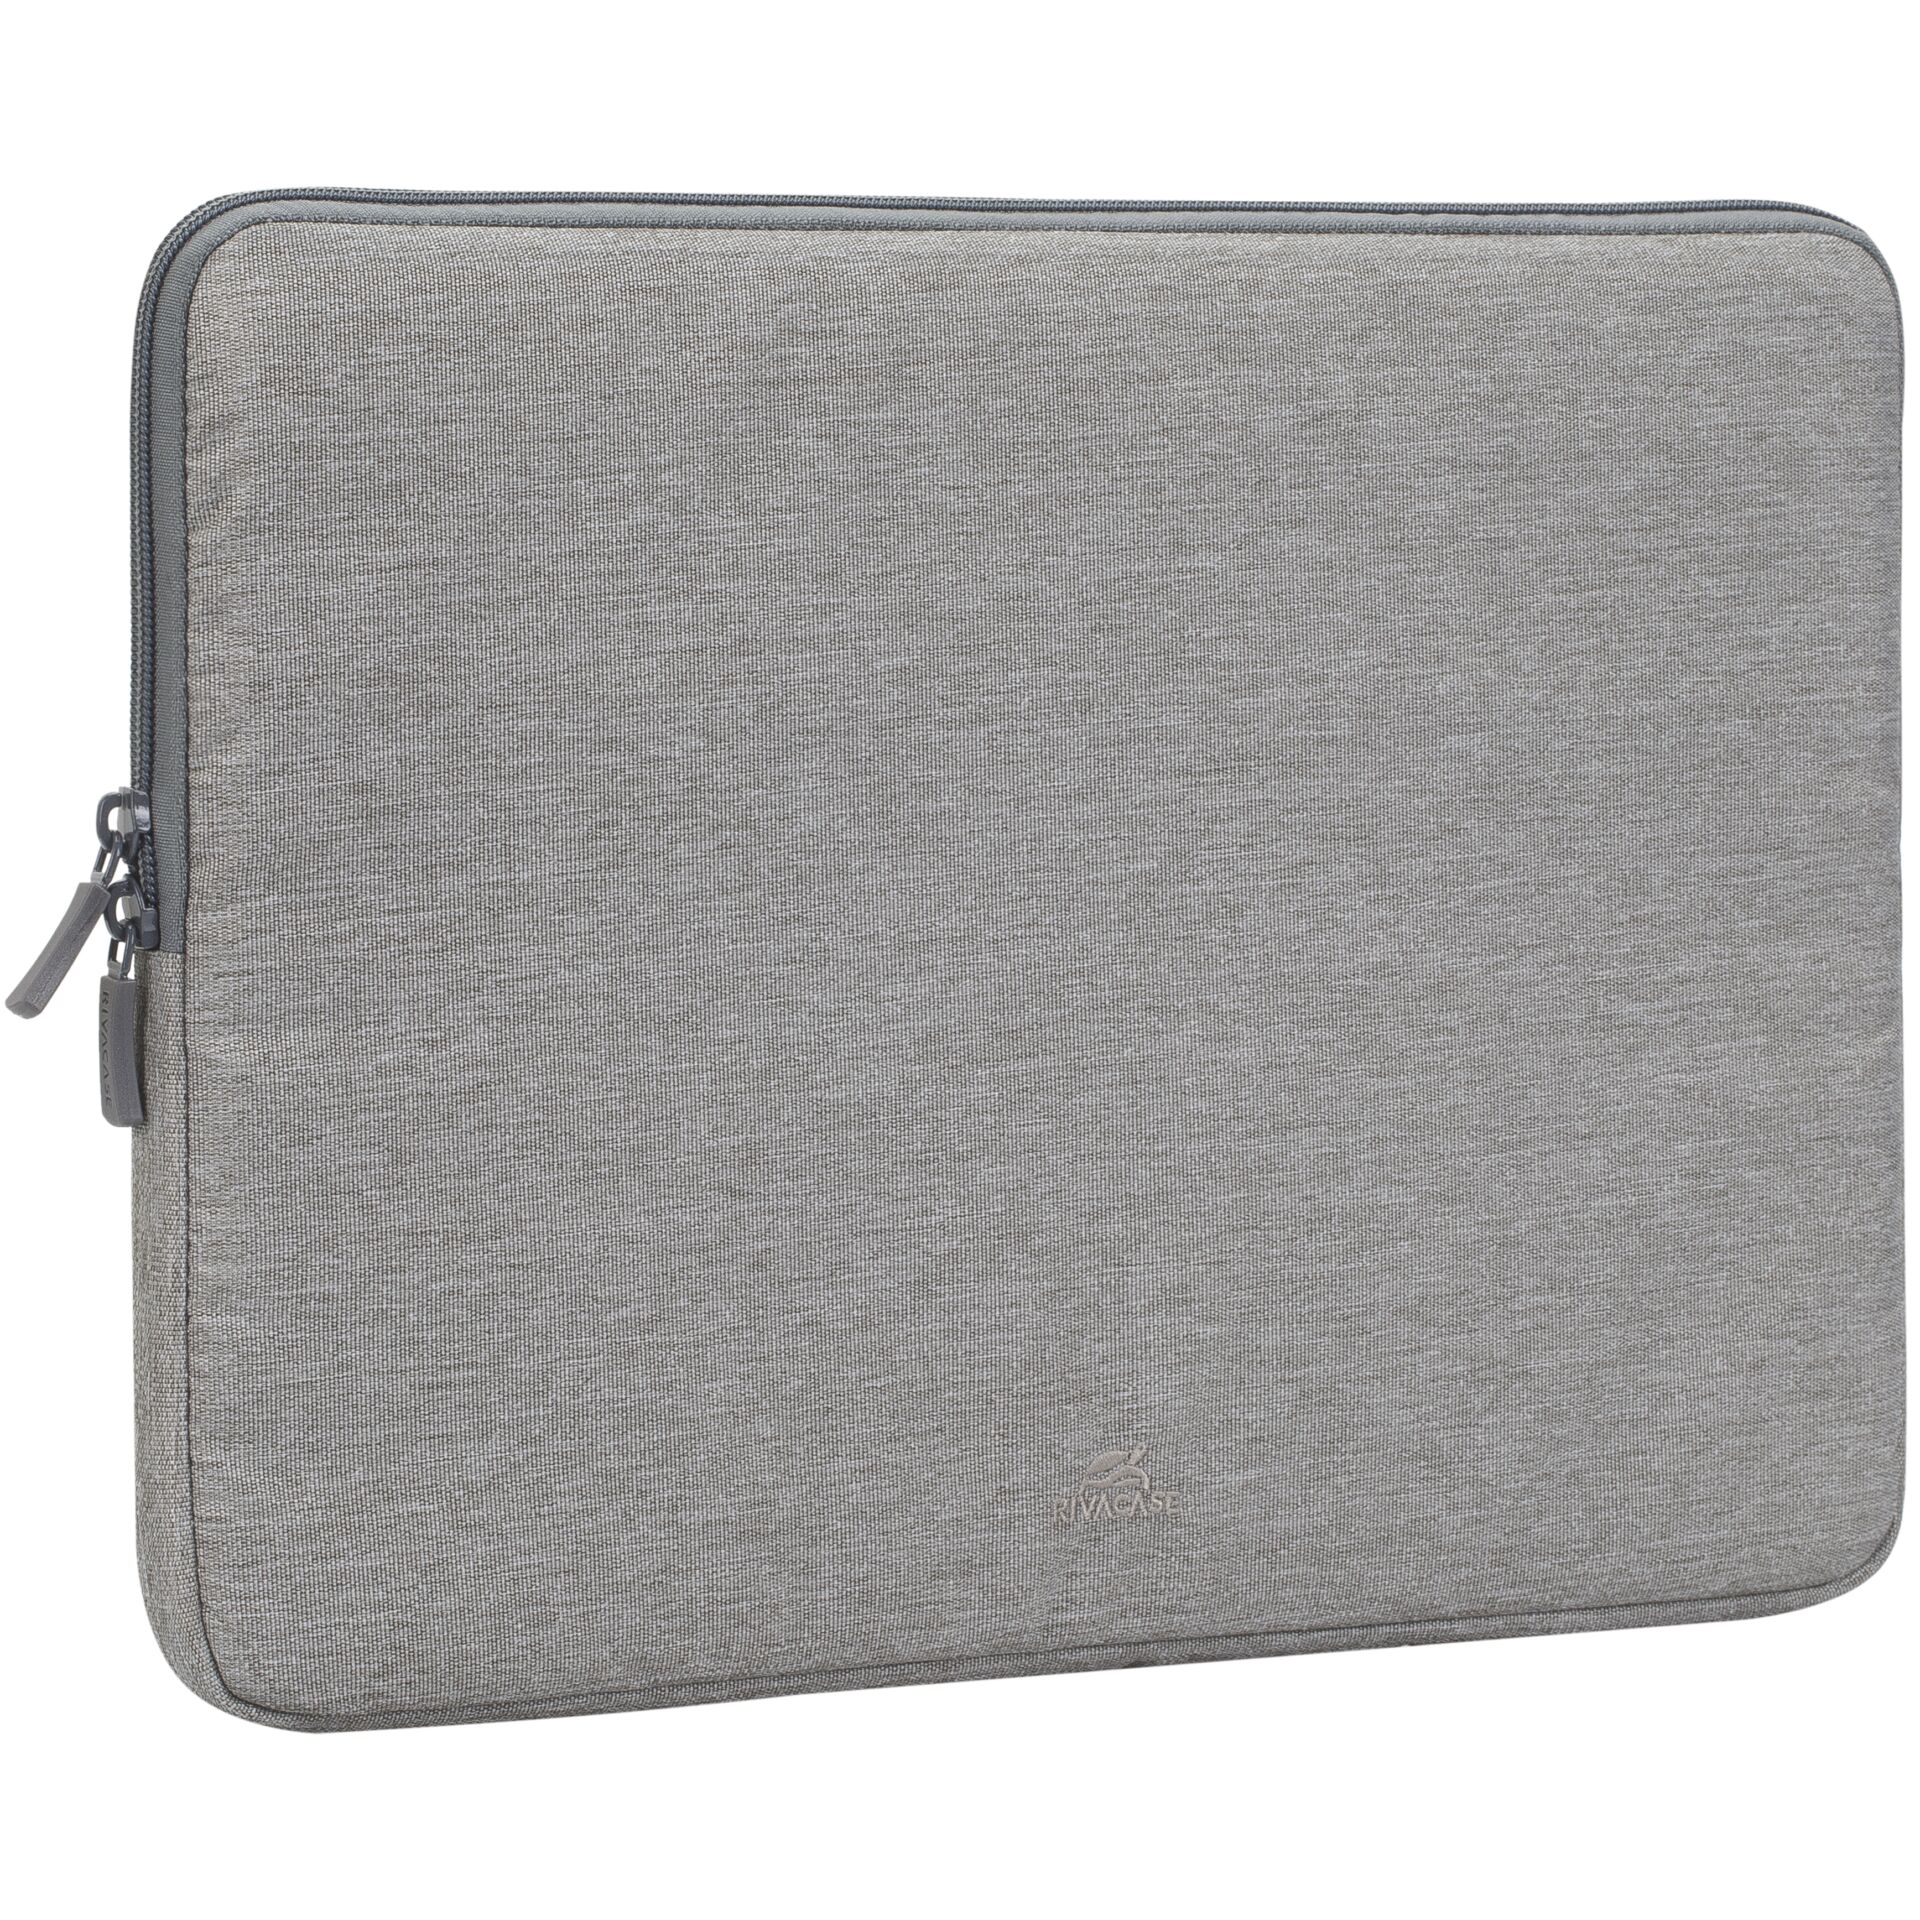 Rivacase 7703 custodia notebook 13.3  ECO grigio